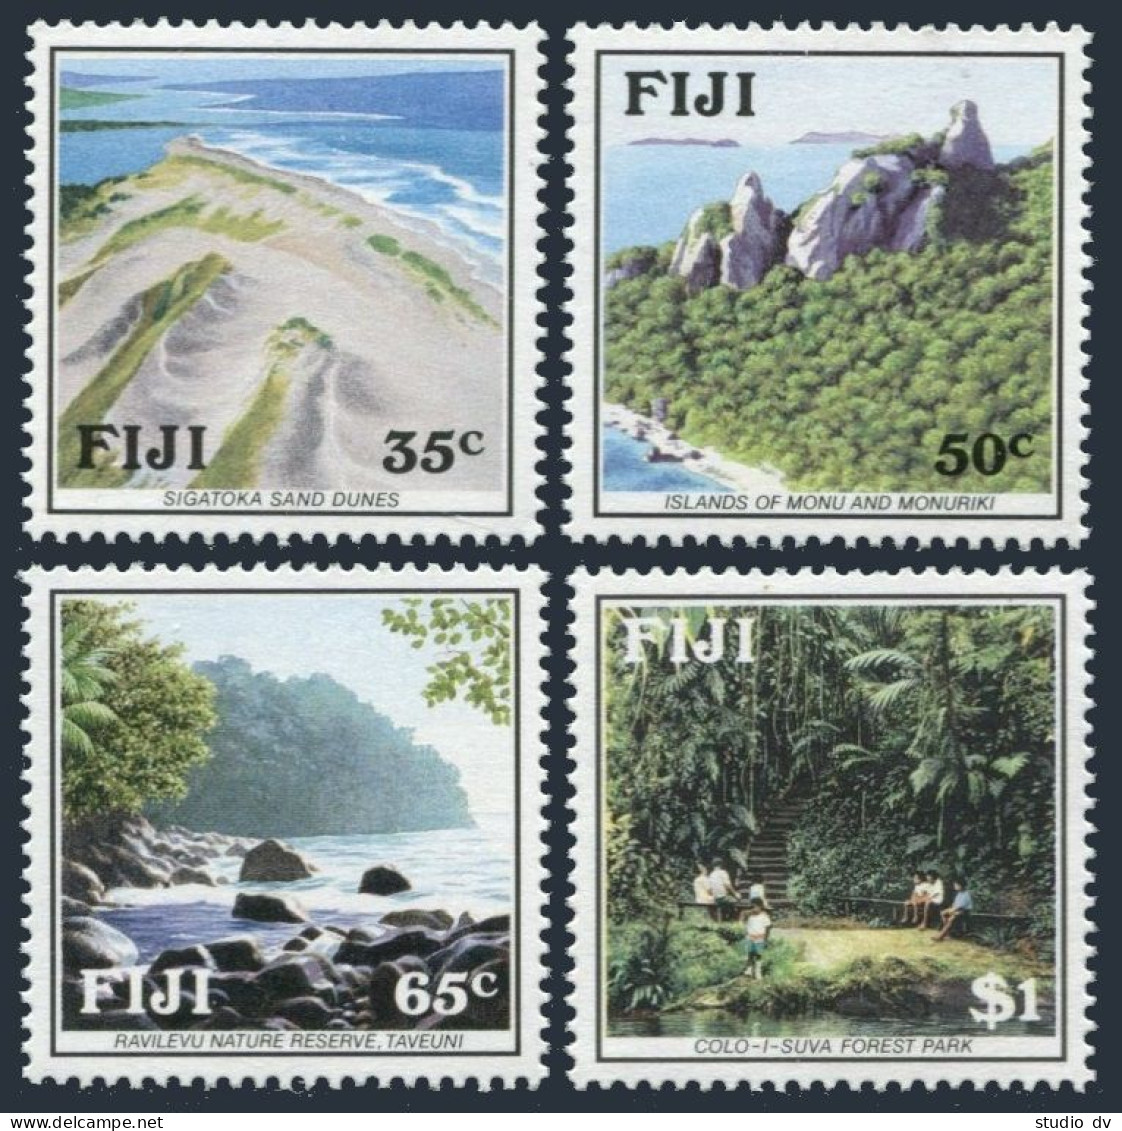 Fiji 637-640, MNH. Mi 614-617. Views 1991. Sigatoka Sand Dunes; Nature Reserves. - Fiji (1970-...)